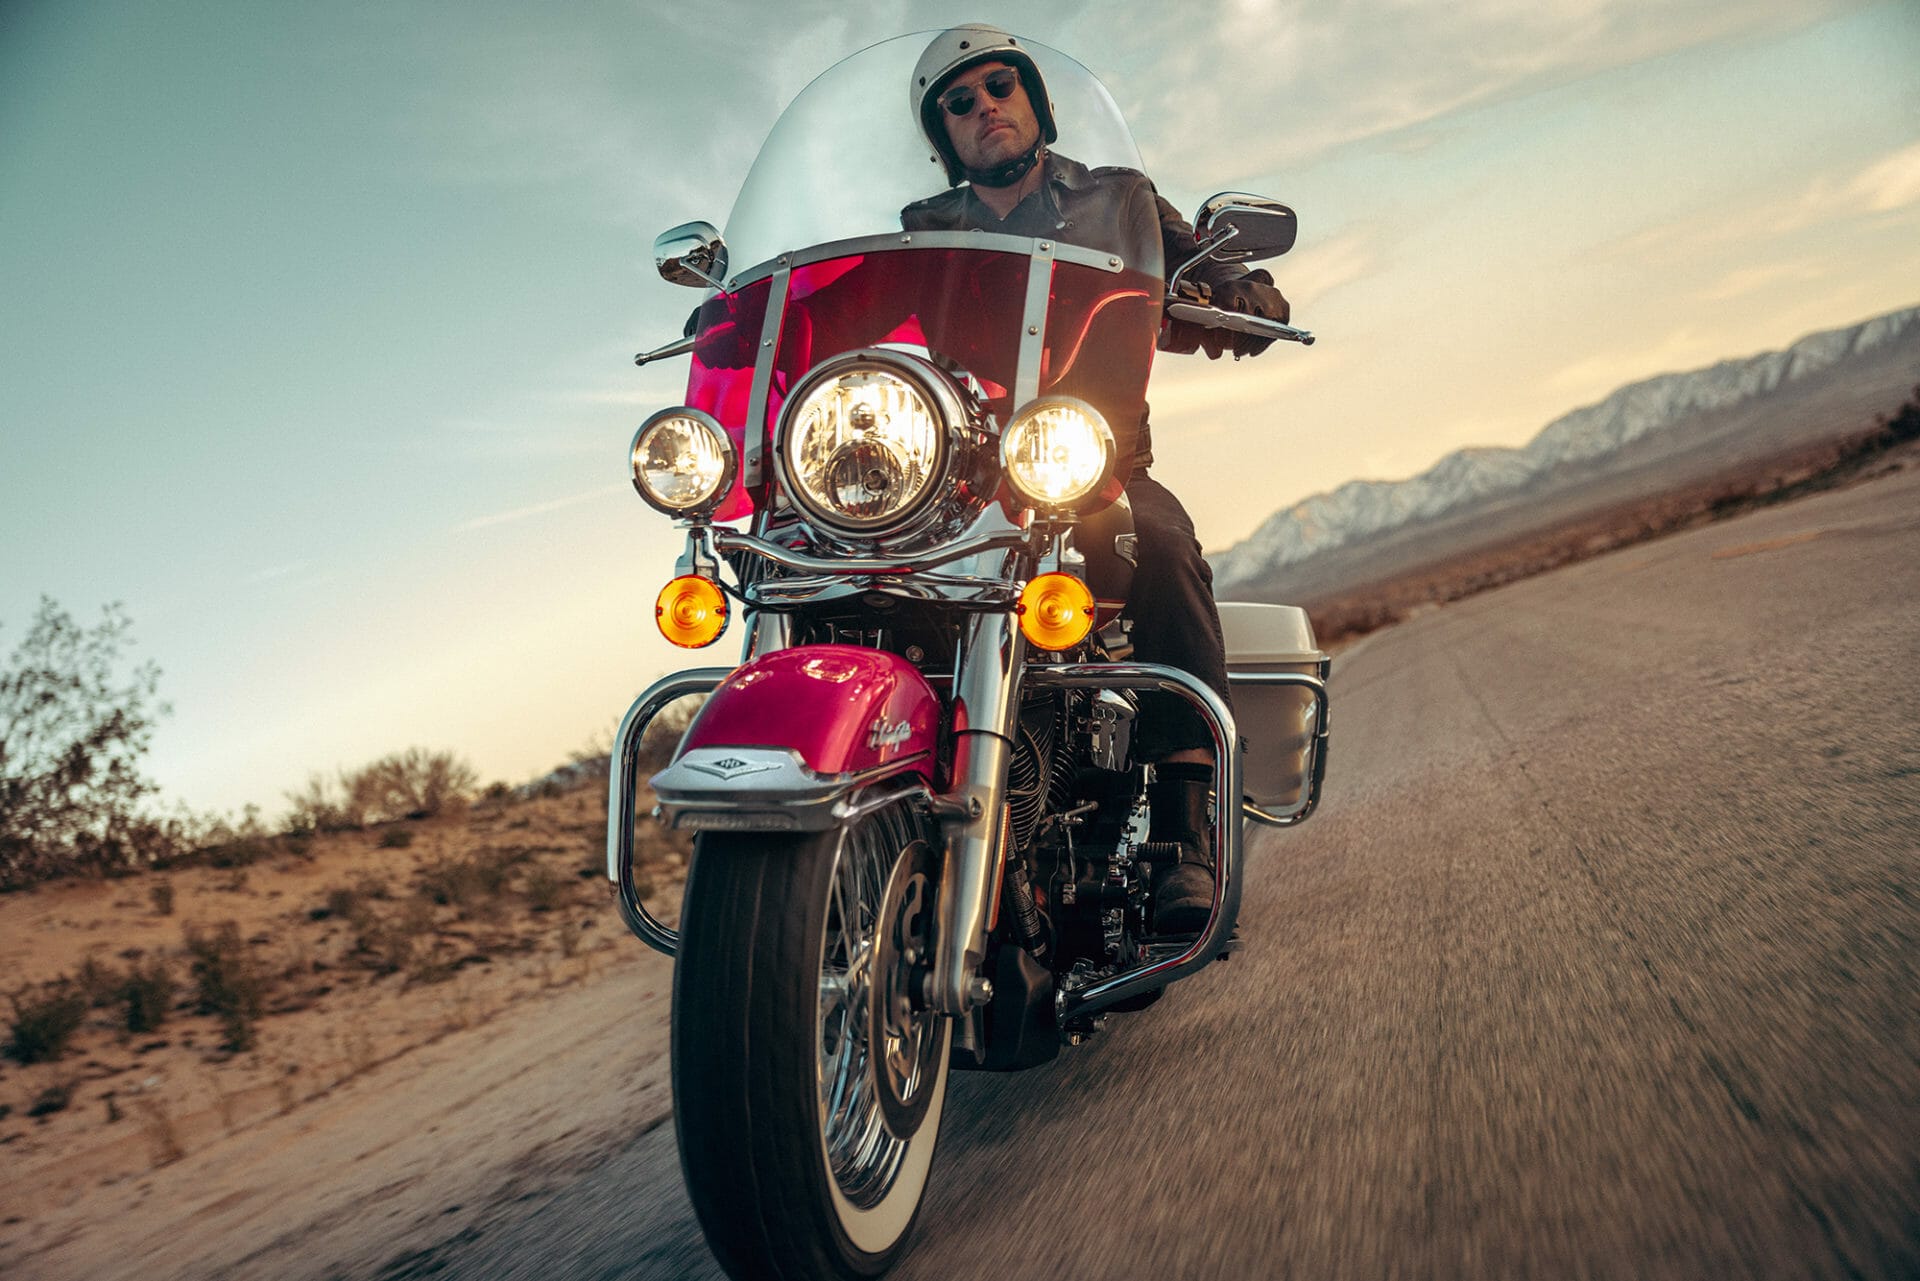 Nostalgie trifft Moderne: Die limitierte Harley-Davidson Electra Glide Highway King